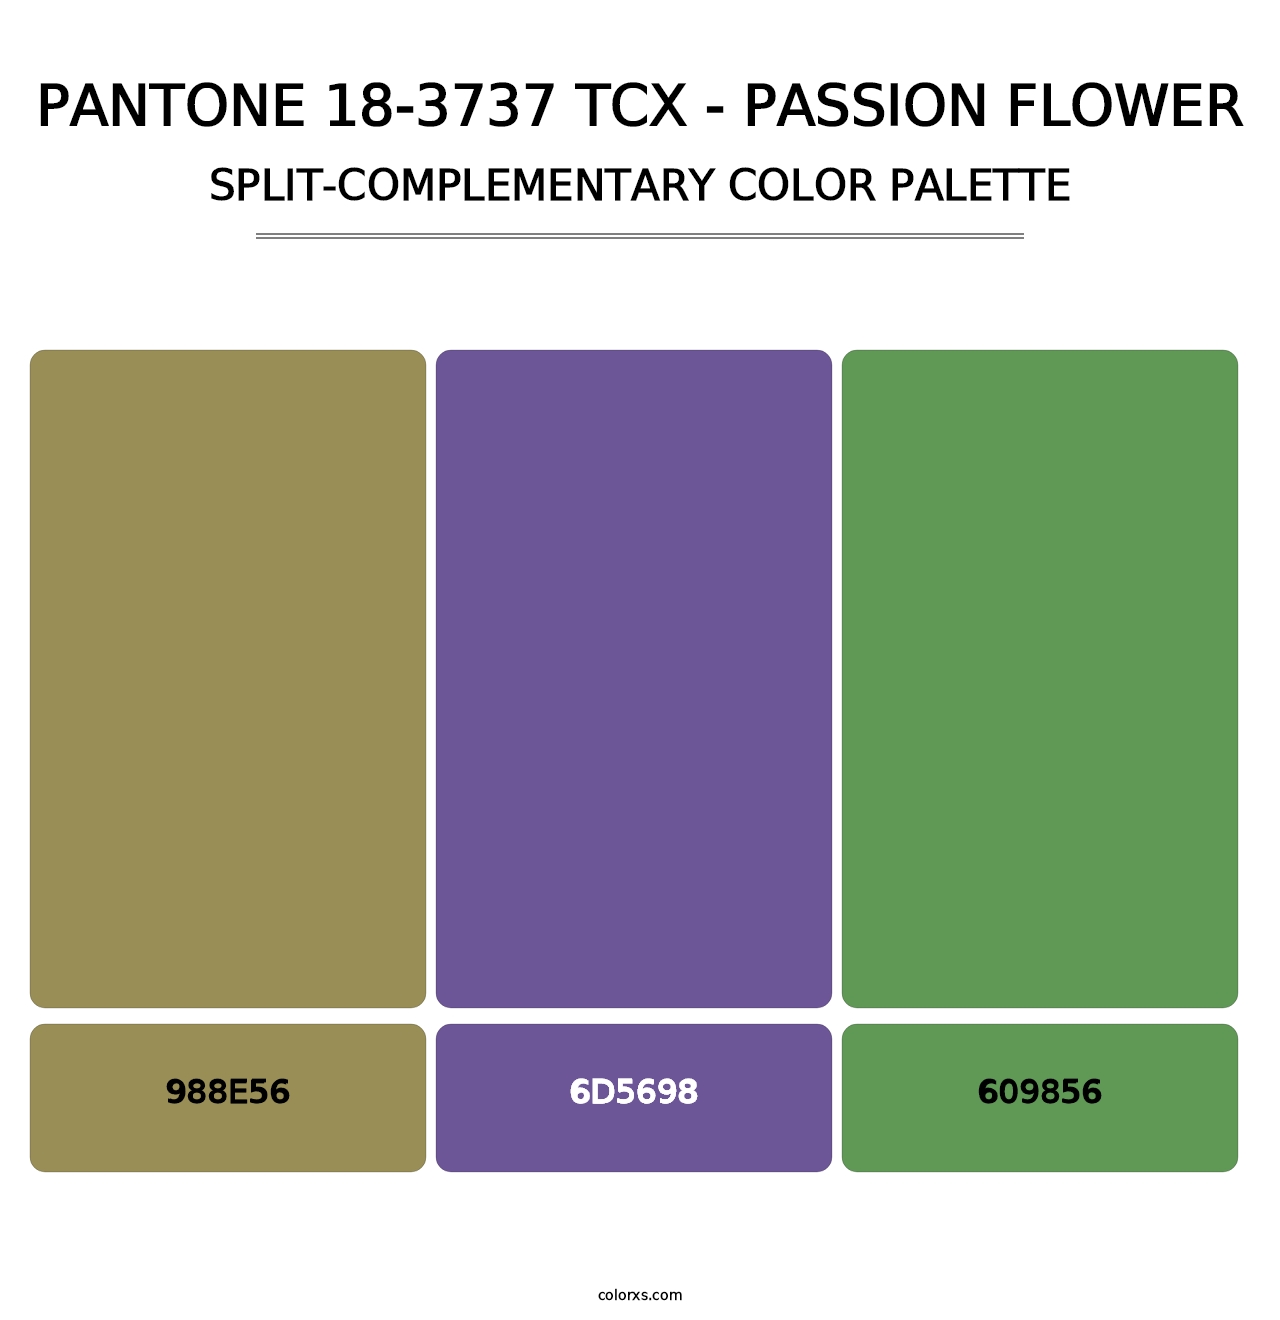 PANTONE 18-3737 TCX - Passion Flower - Split-Complementary Color Palette